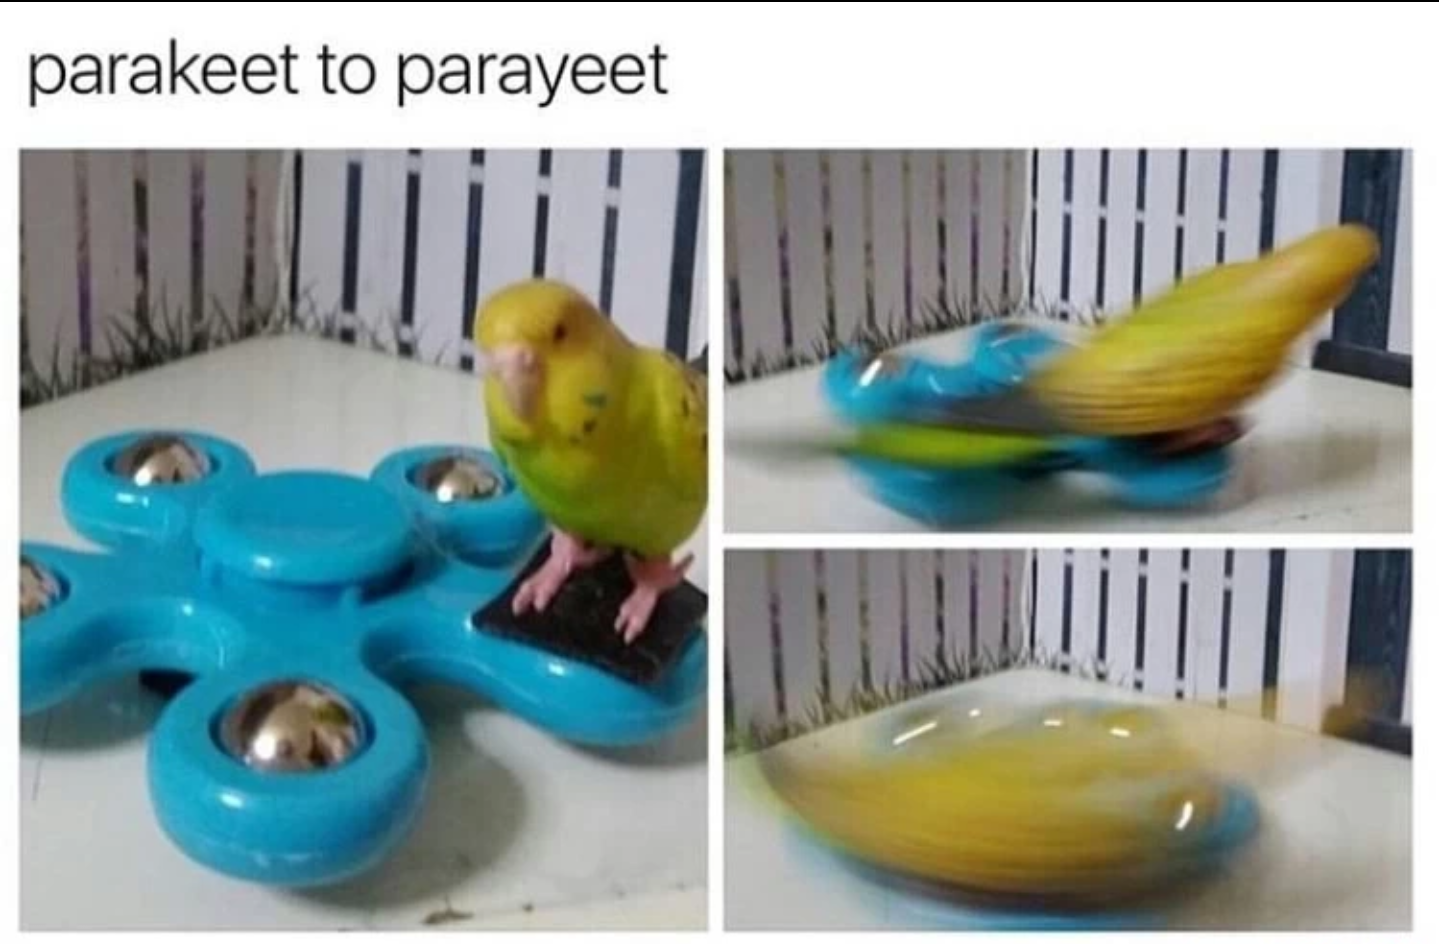 parakeet more like parayeet - parakeet to parayeet